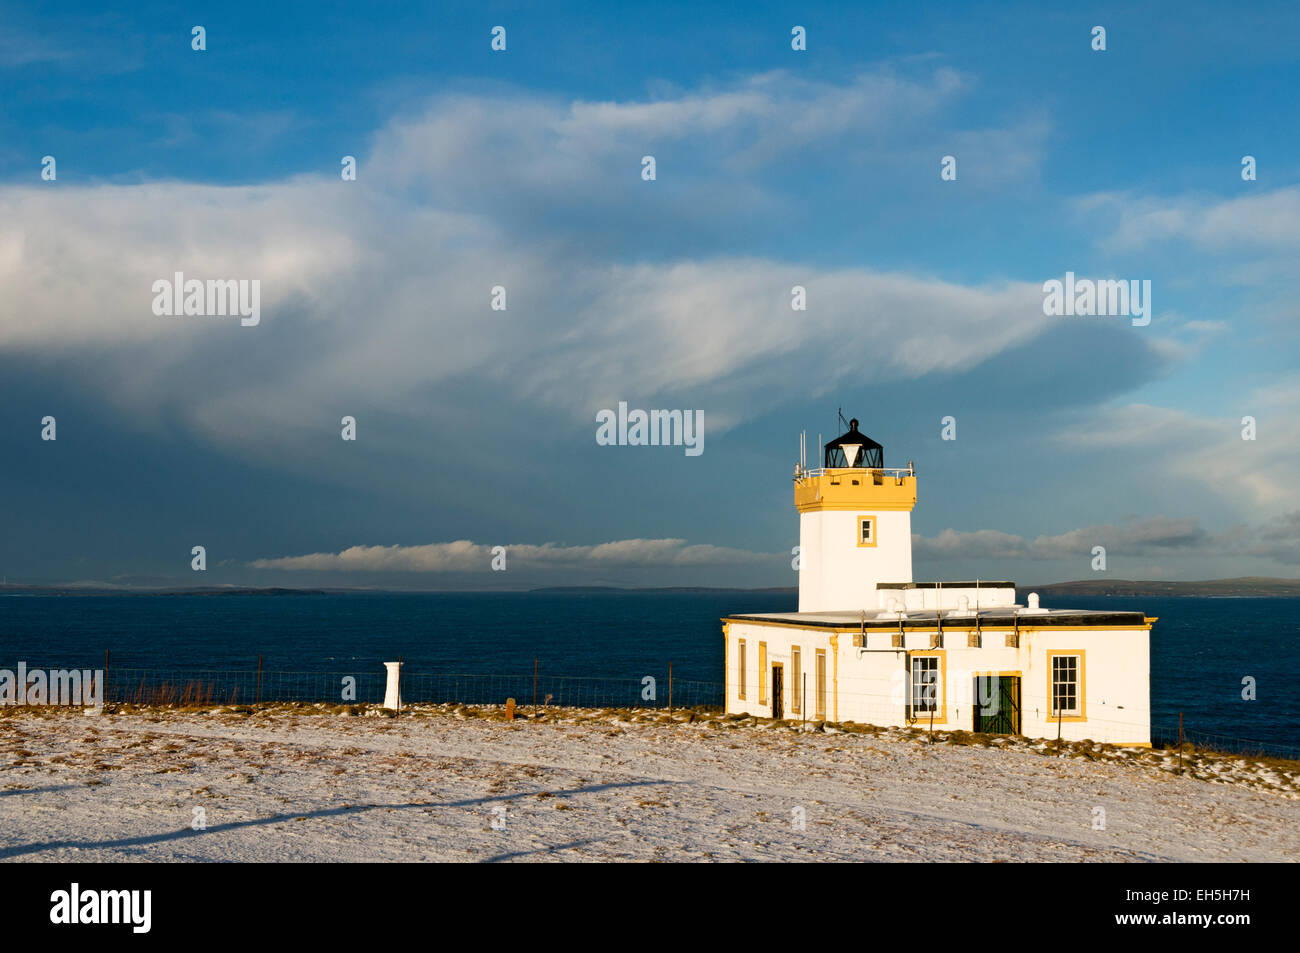 Duncansby Head lighthouse, near John o'Groats, Caithness, Scotland, UK Stock Photo